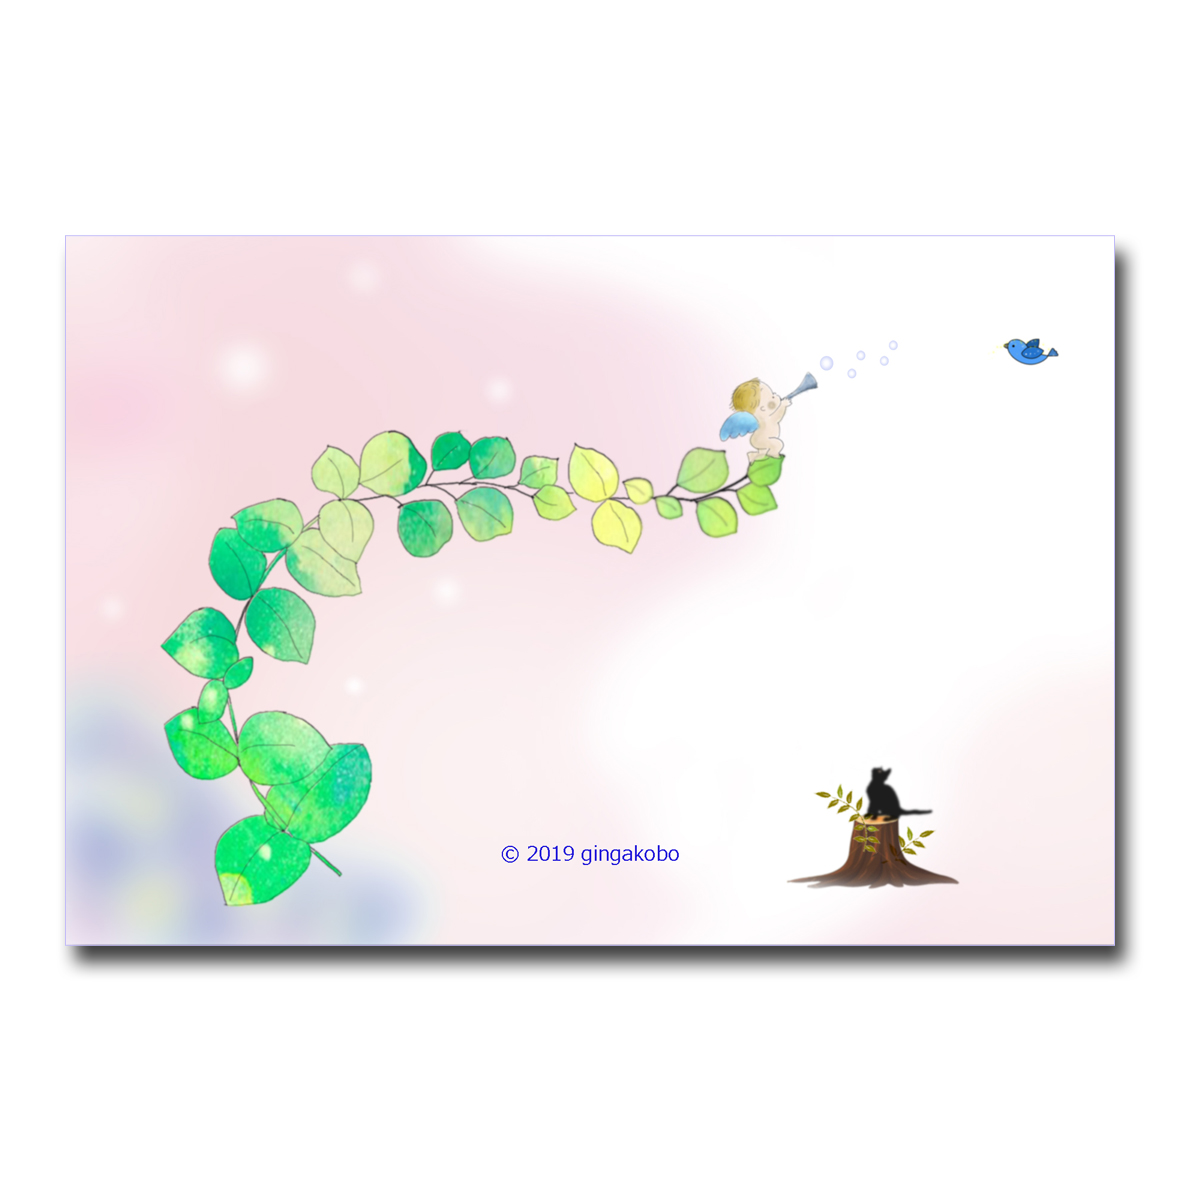 黒猫とエンジェルと幸せの青い鳥 ほっこり癒しのイラストポストカード2枚組 No 858 Iichi ハンドメイド クラフト作品 手仕事品の通販